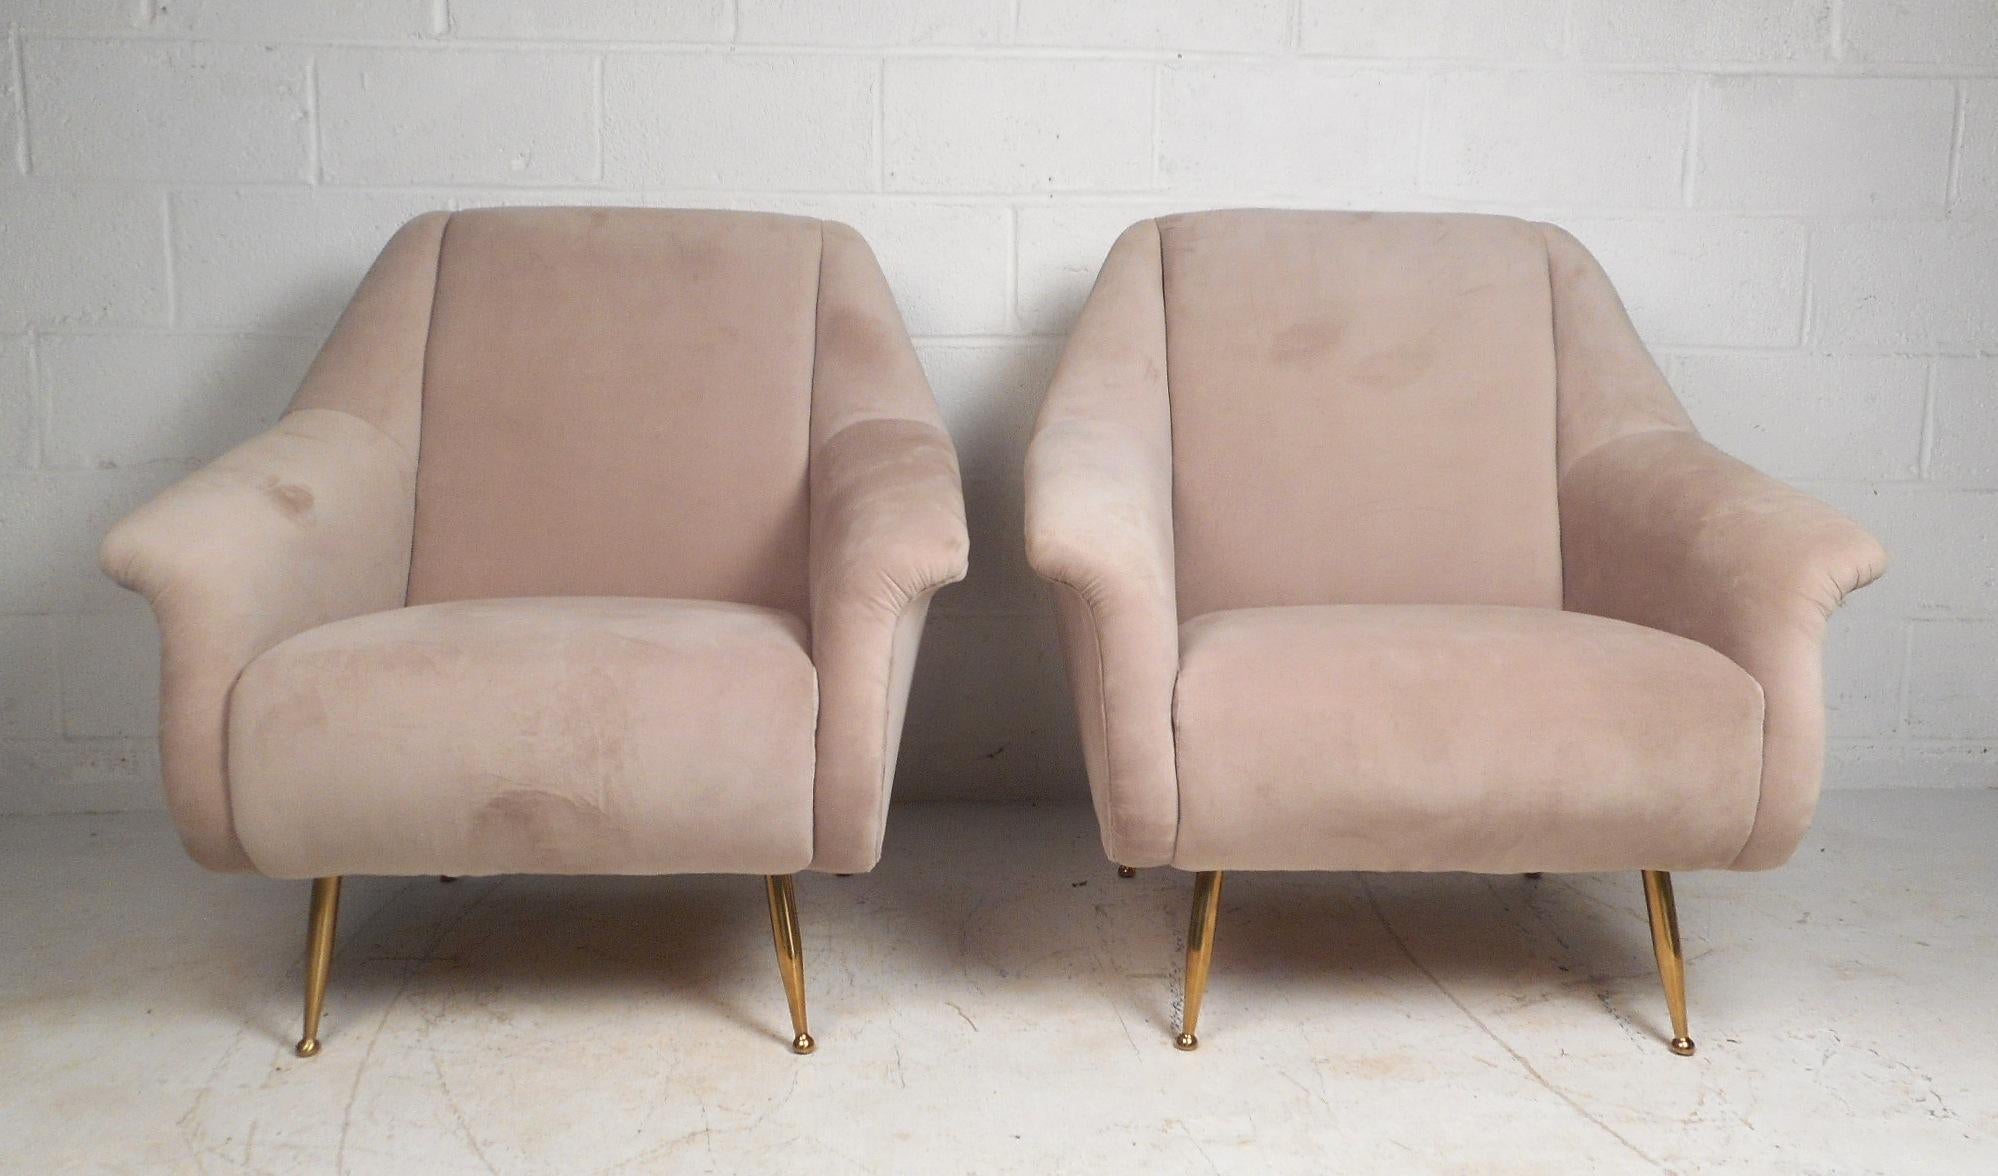 Dieses wunderbare Paar Loungesessel im italienischen Stil ist der Inbegriff von Komfort. Diese Stühle sind mit breiten und dicken Sitzpolstern ausgestattet, die ein angenehmes Sitzerlebnis ermöglichen. Die Stühle haben geflügelte Armlehnen und eine